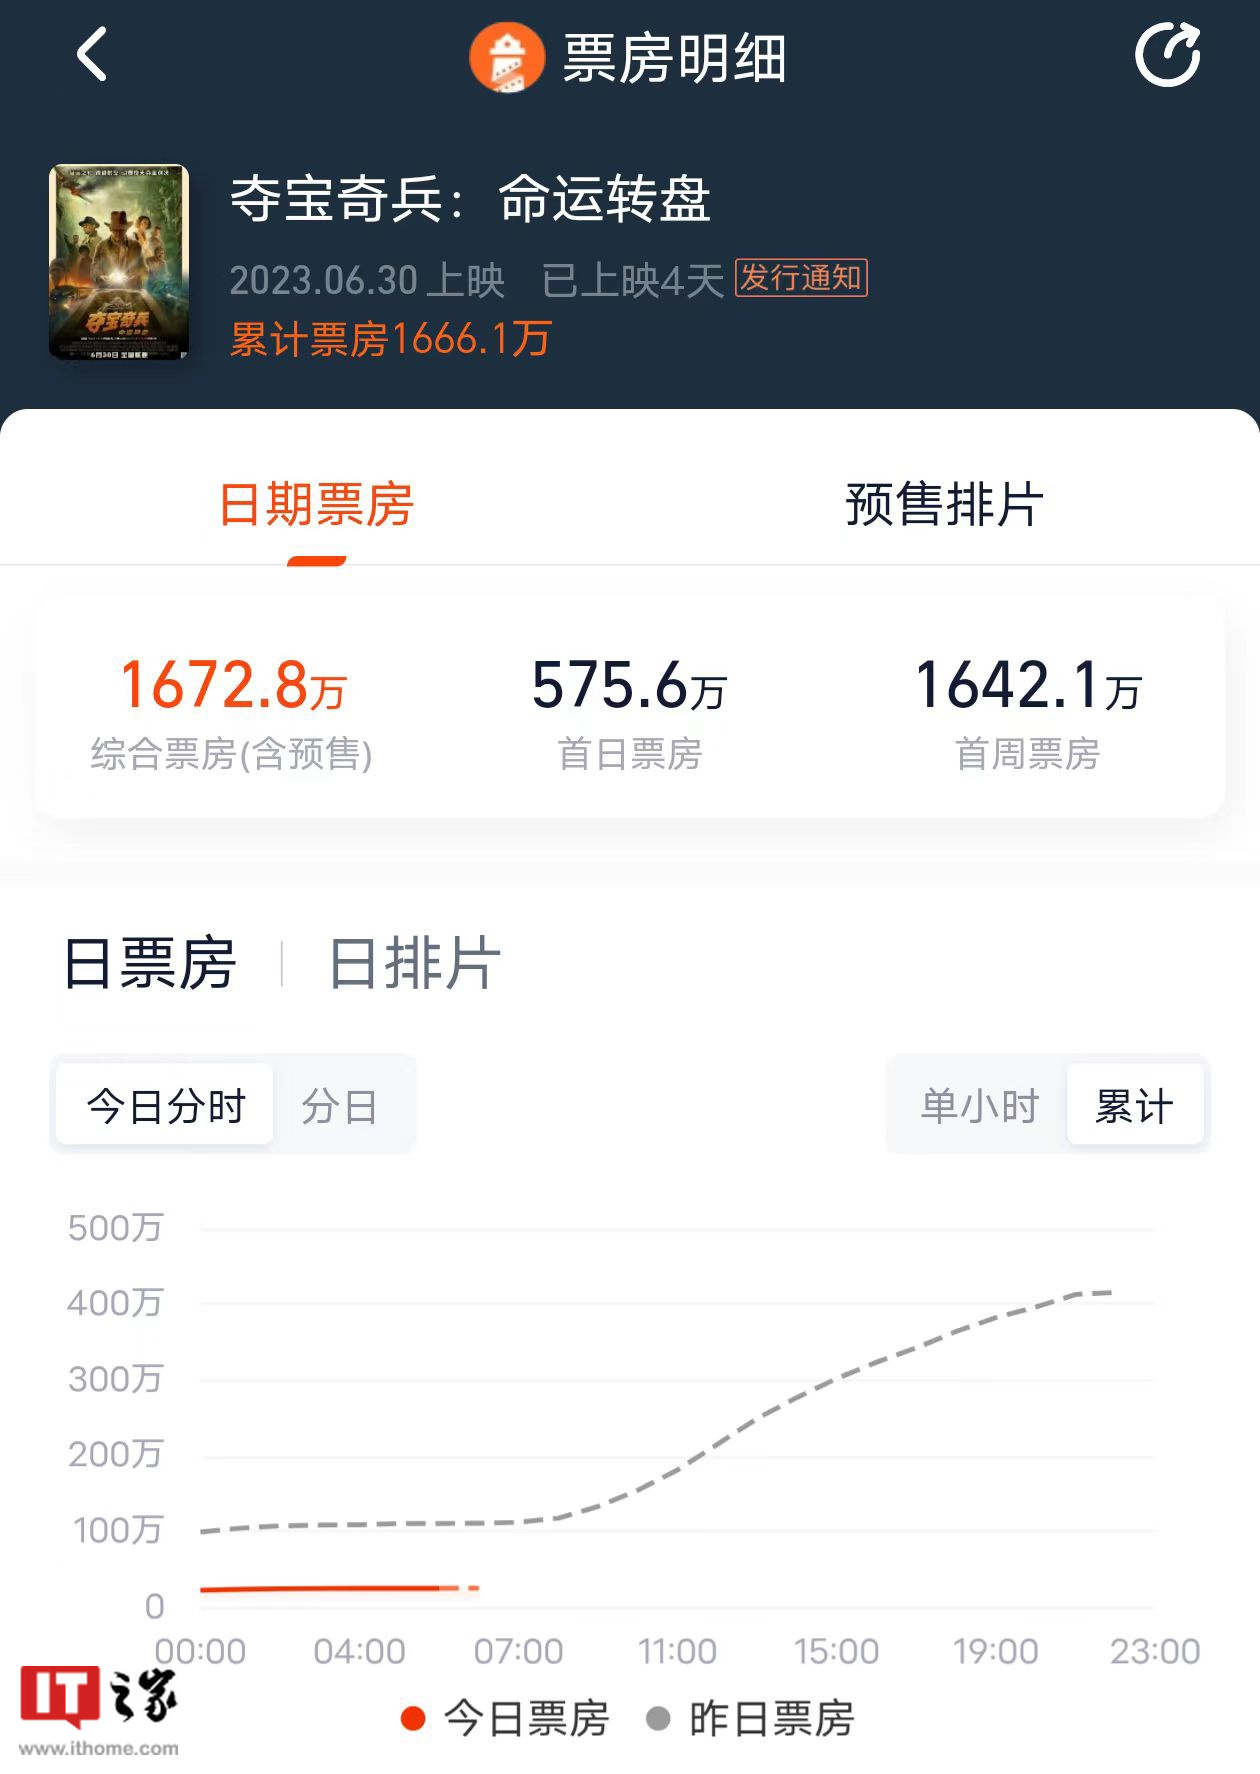 《夺宝奇兵 5: 命运转盘》中国内地首周票房 1642 万元